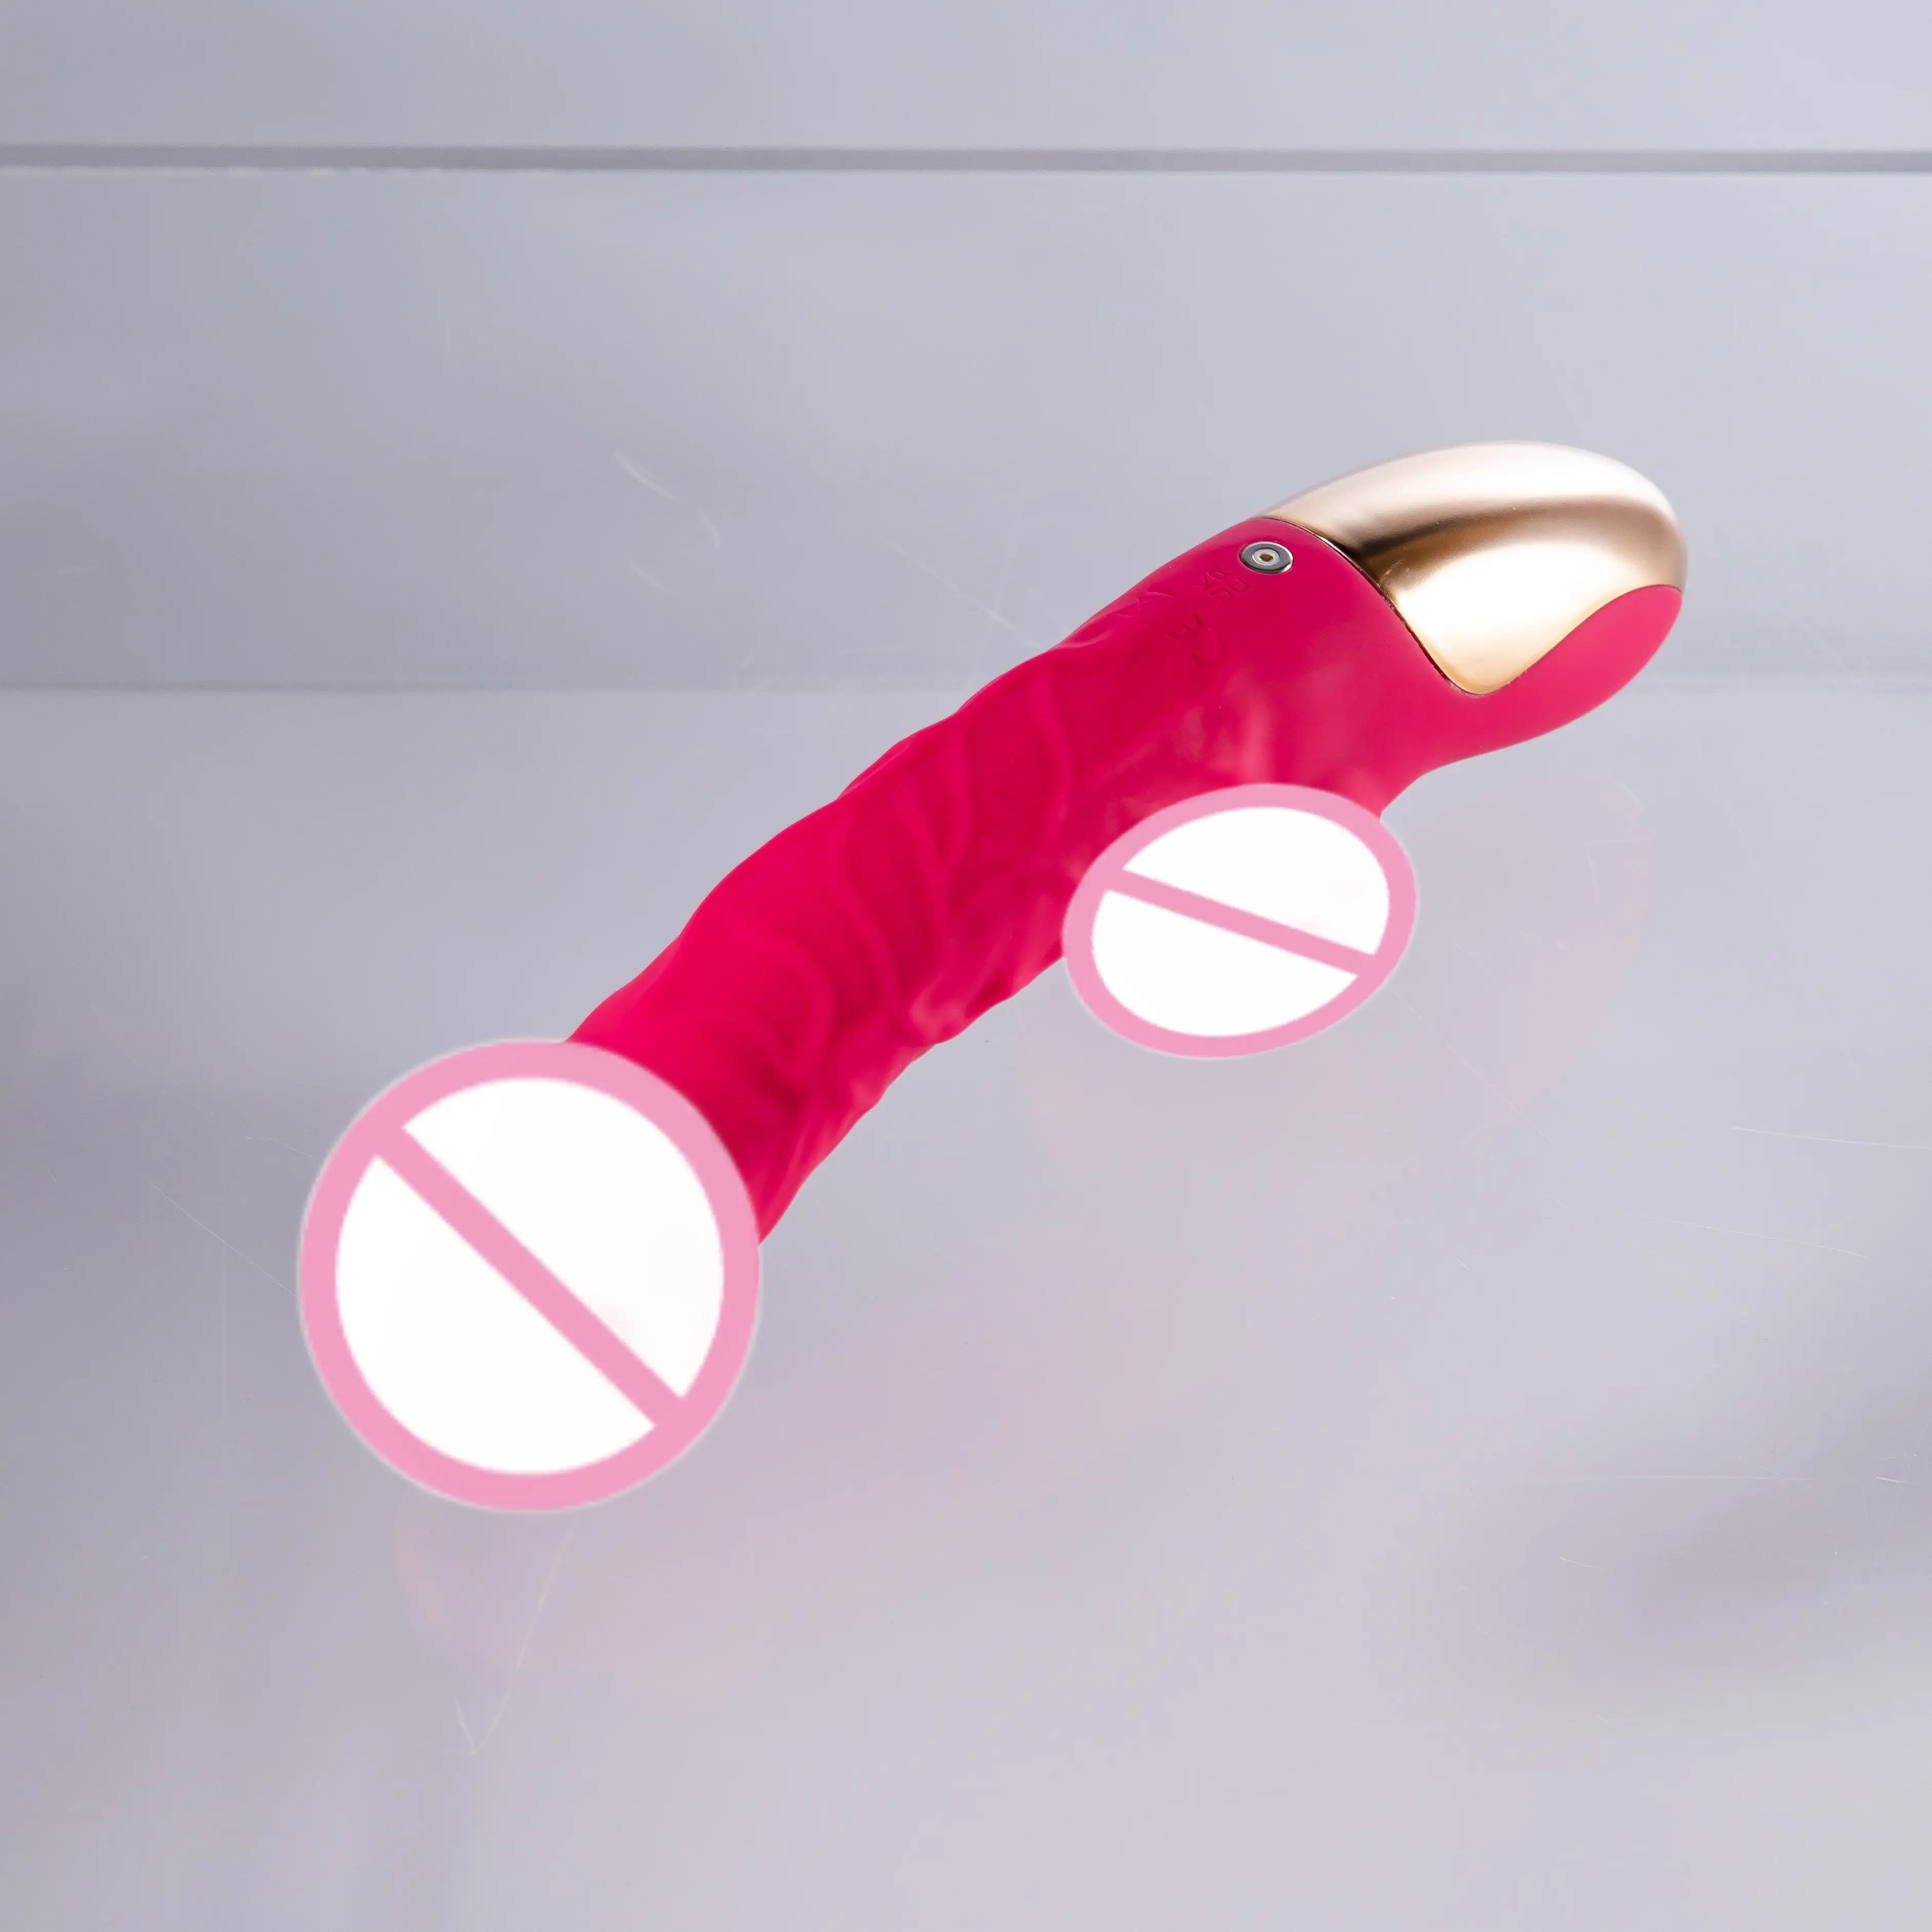 Logo kecantikan gadis masturbasi silikon lembut elektrik Vibrator wanita terbaik untuk wanita pasangan permainan mainan seks